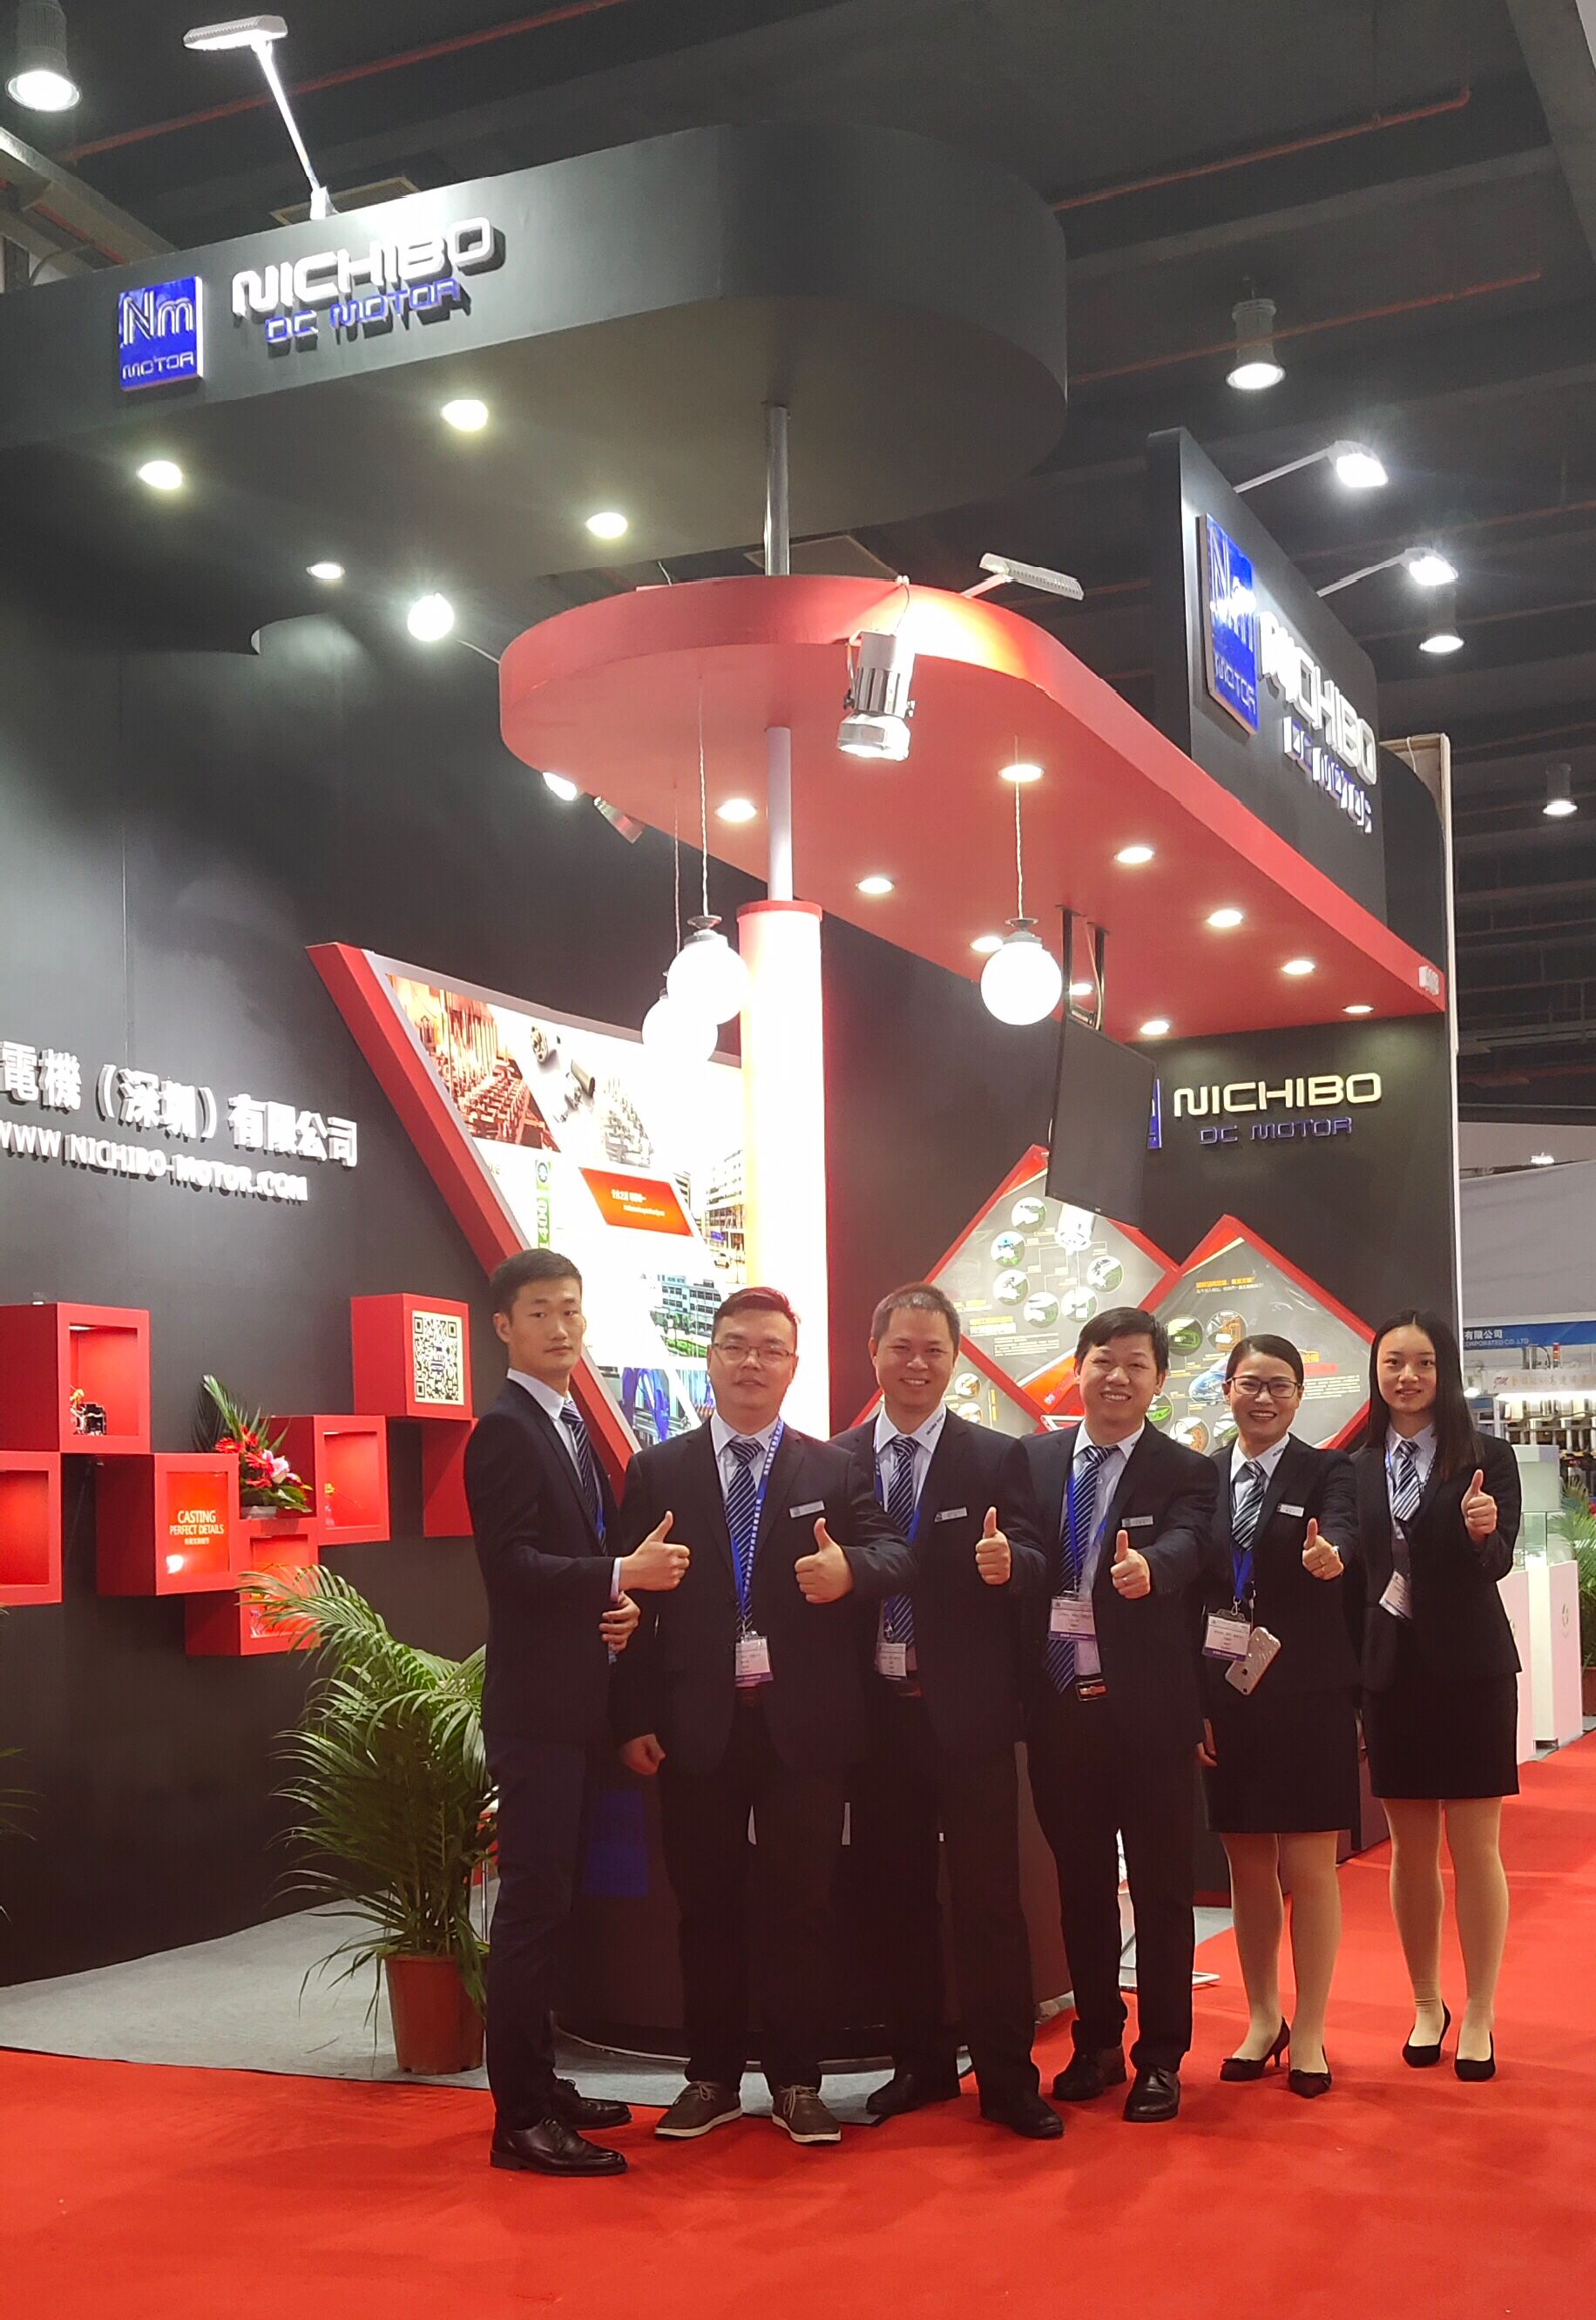 友貿電機(深圳)有限公司 參加 第二十三屆中國(國際)小電機技術研討會暨展覽會